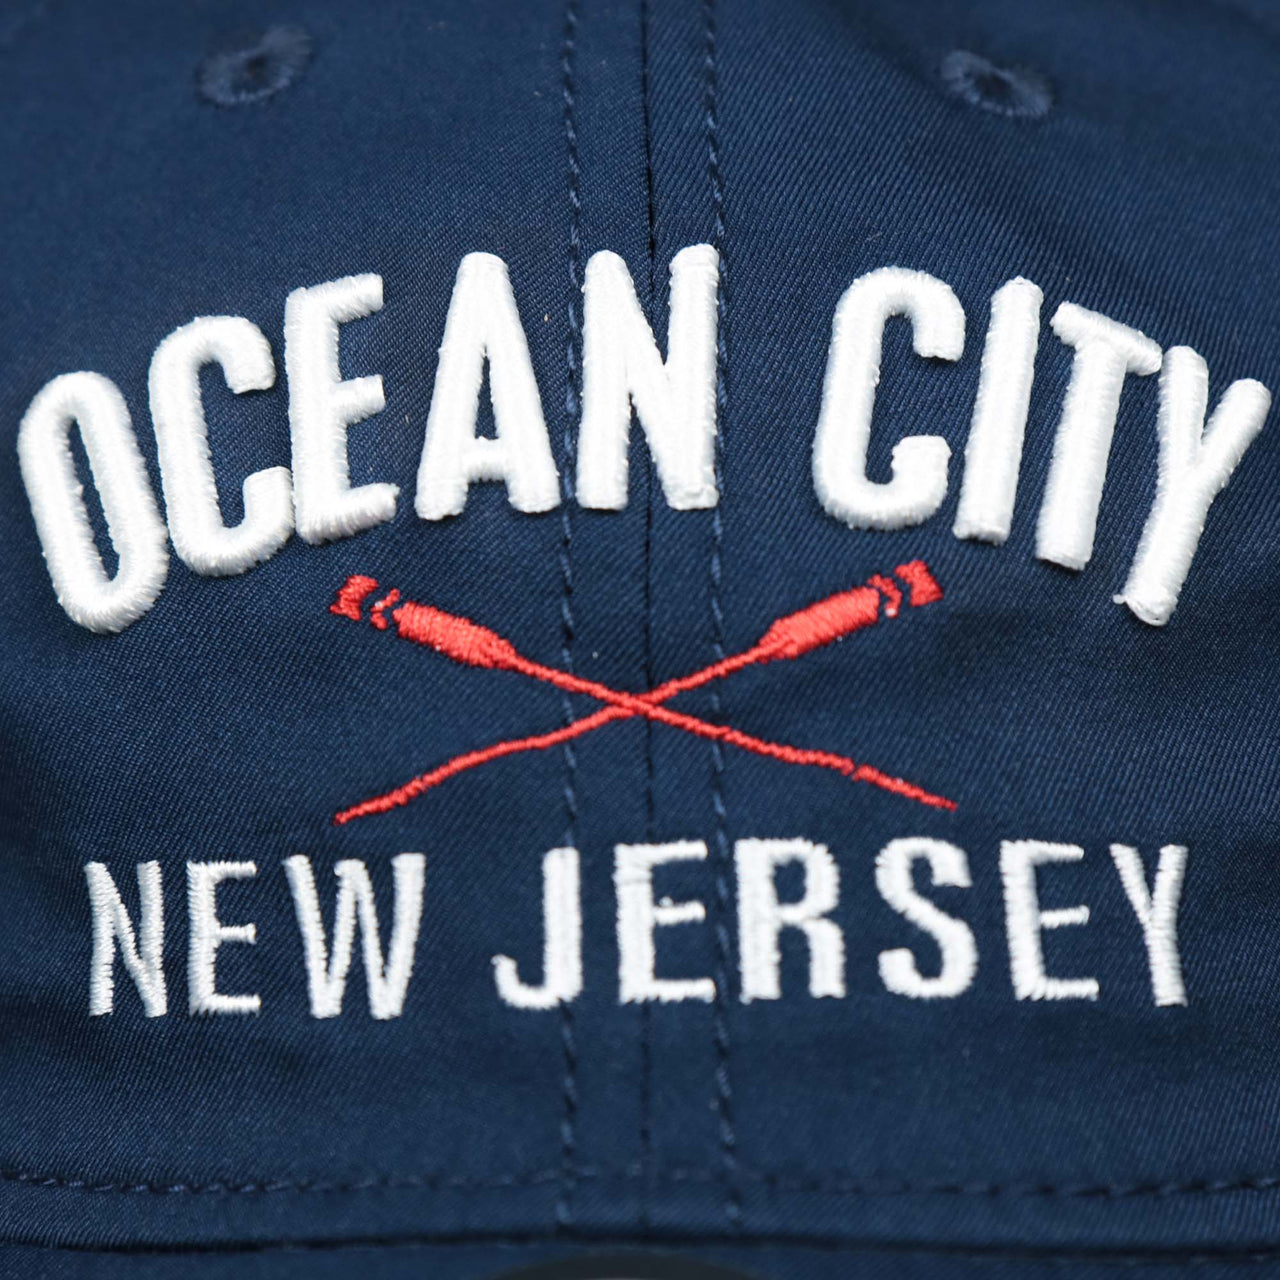 The Ocean City New Jersey Wordmark and Ocean City Crossed Oars Logo on the Ocean City New Jersey Wordmark Crossed Oars Logo Dad Hat | Navy Blue Dad Hat